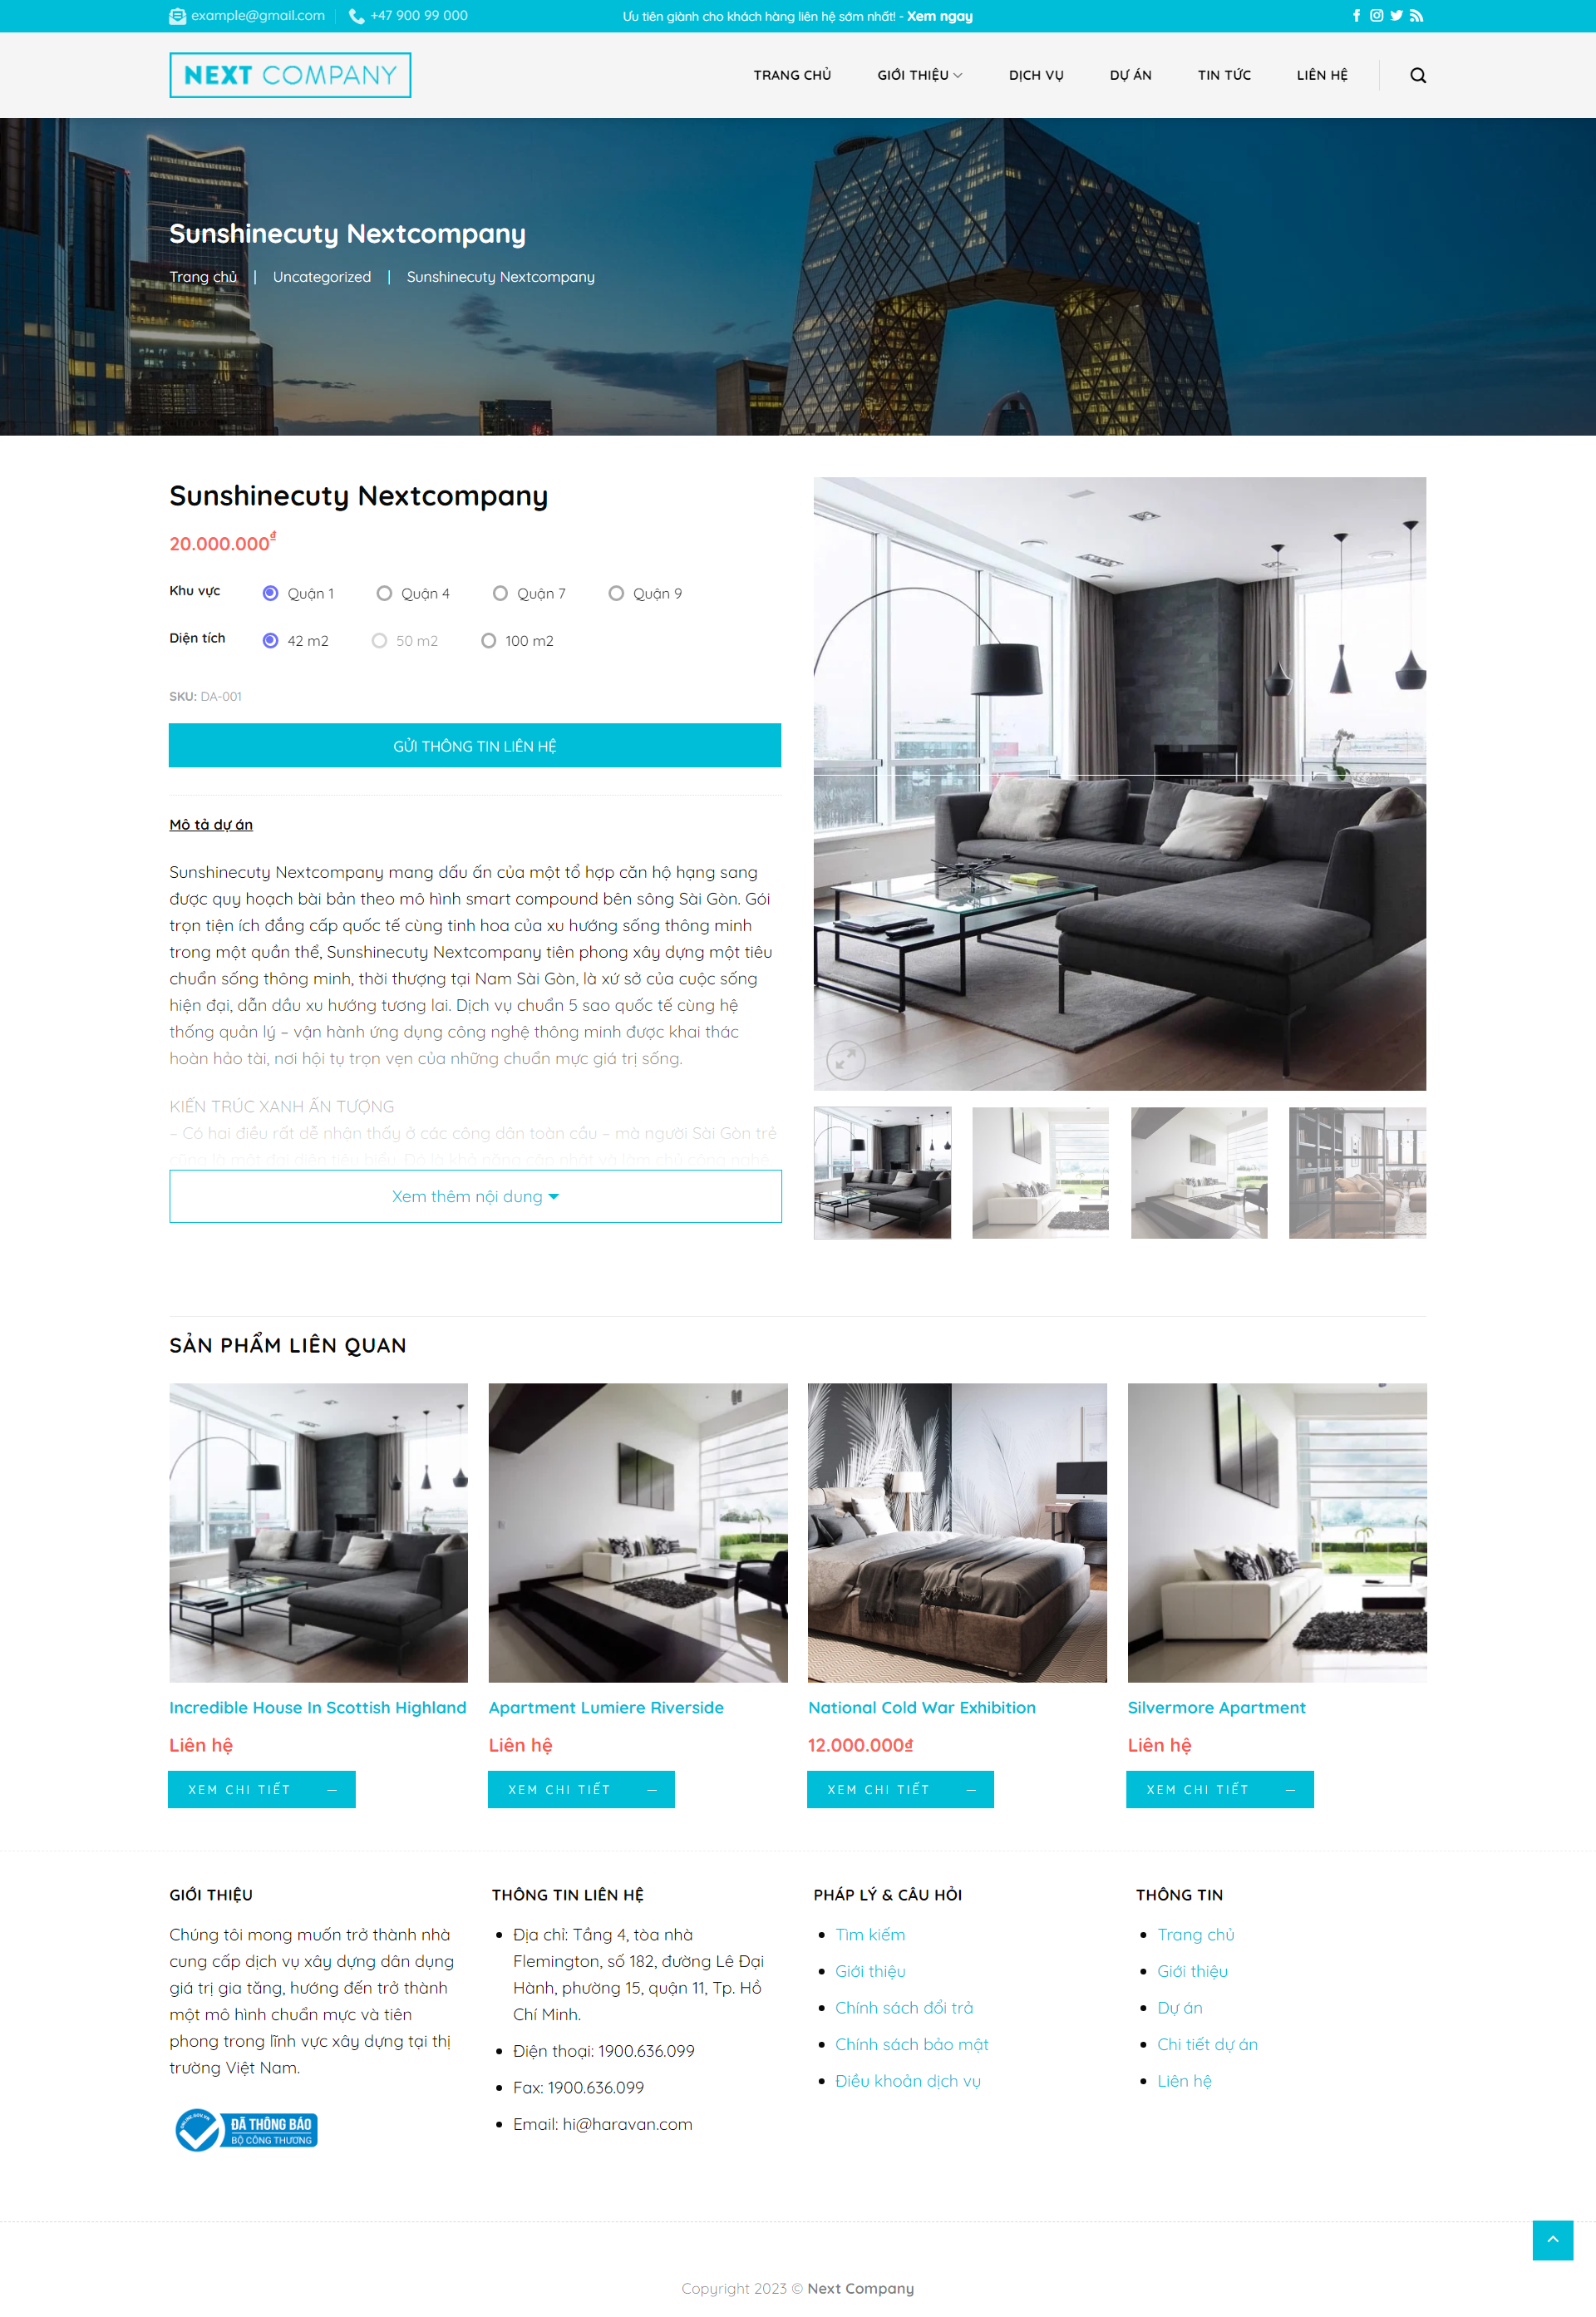 Mẫu giao diện website cho thuê căn hộ Next company